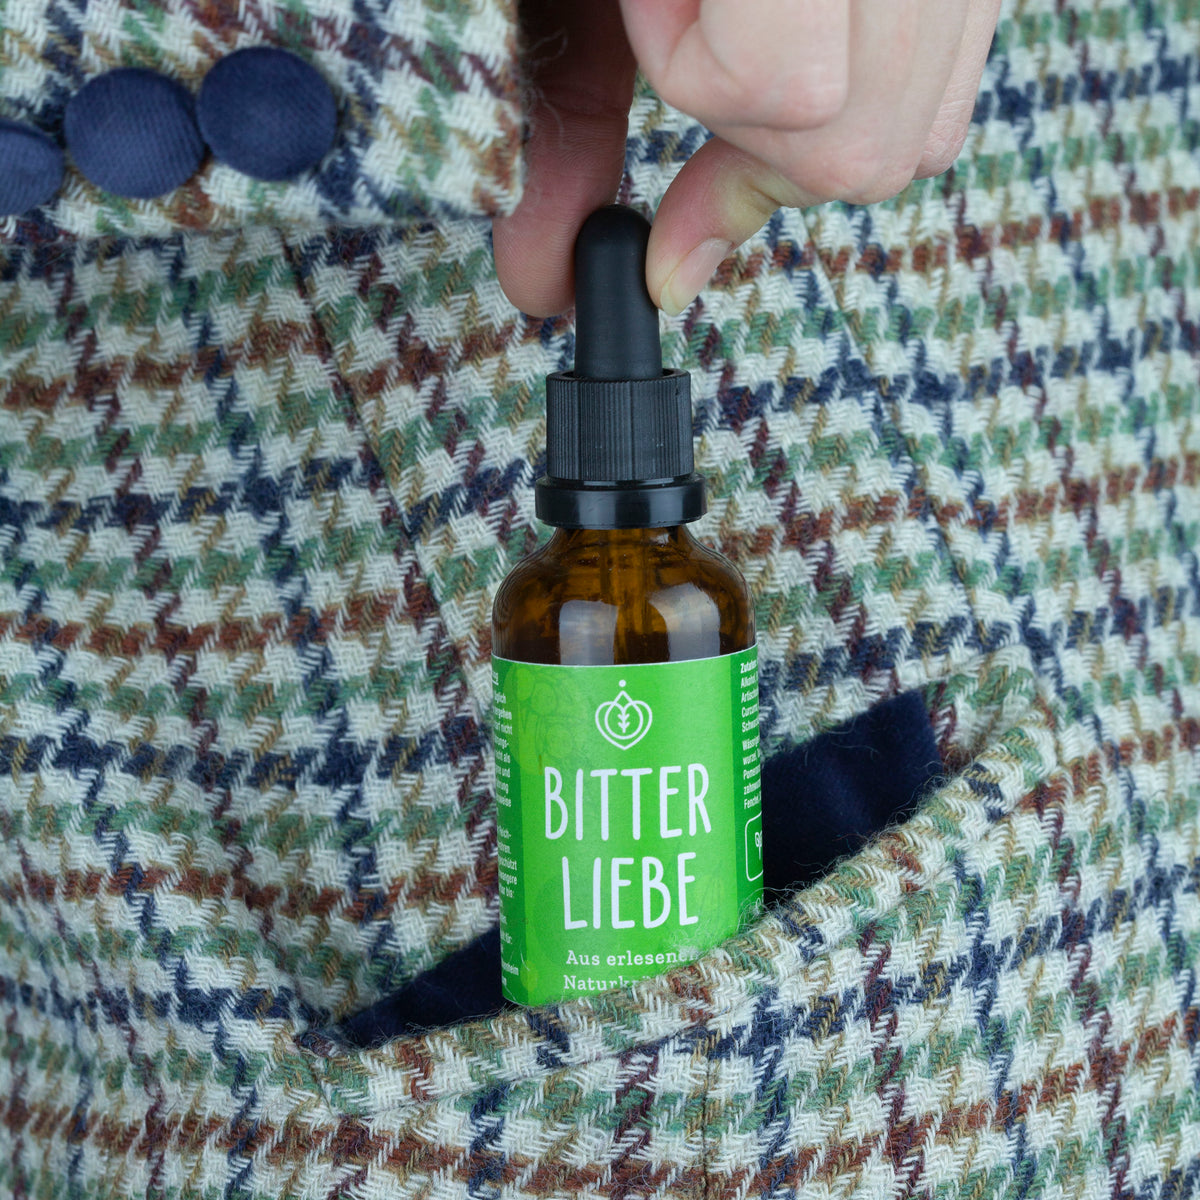 BitterLiebe 50ml – Leckere Bitterstoffe Tropfen mit studienbasierter Wirkung